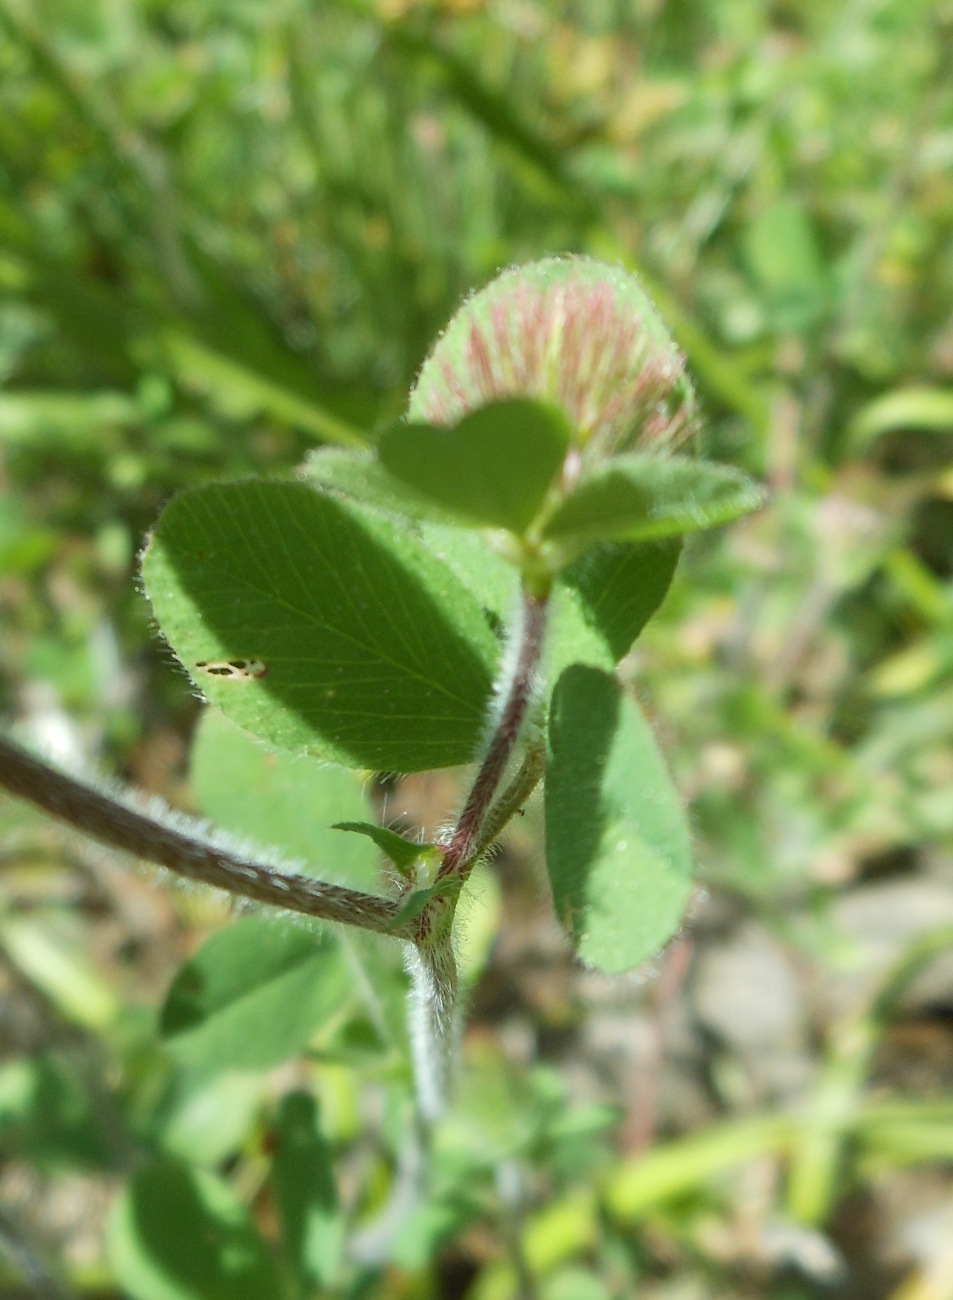 Trifolium ligusticum Loisel./Trifoglio ligure